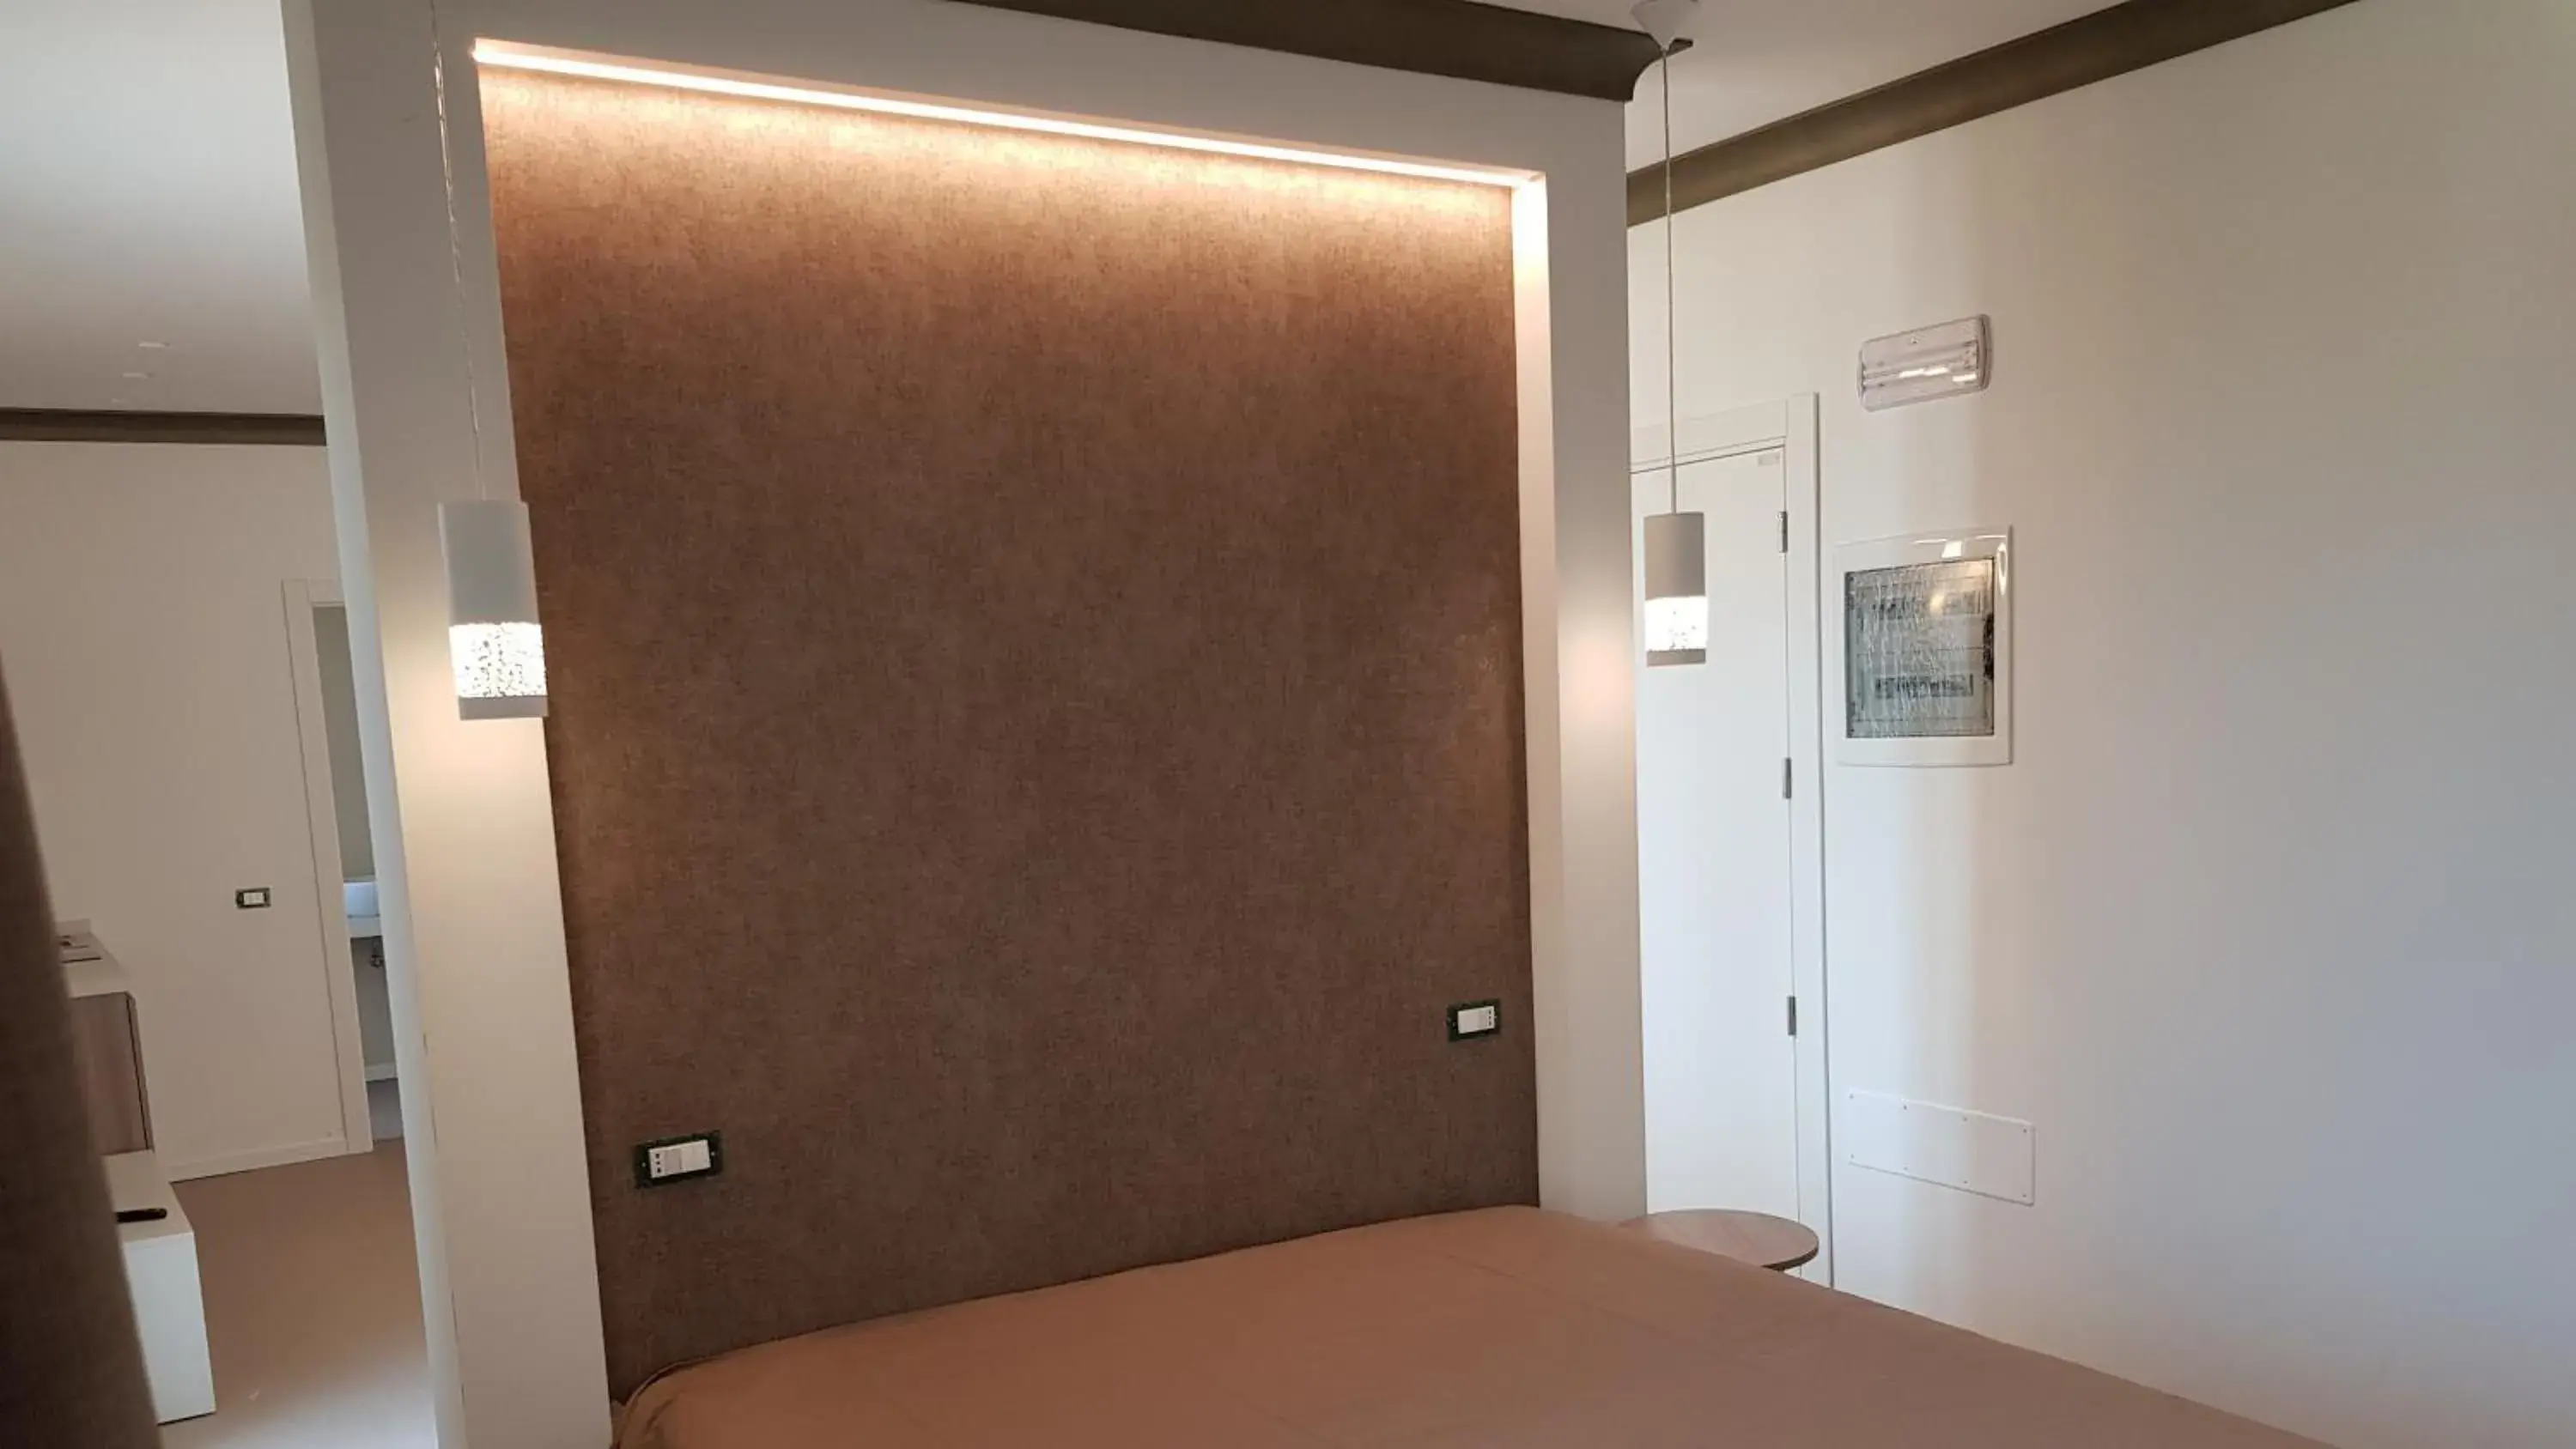 Bed in Residence Hotel Venus Suites